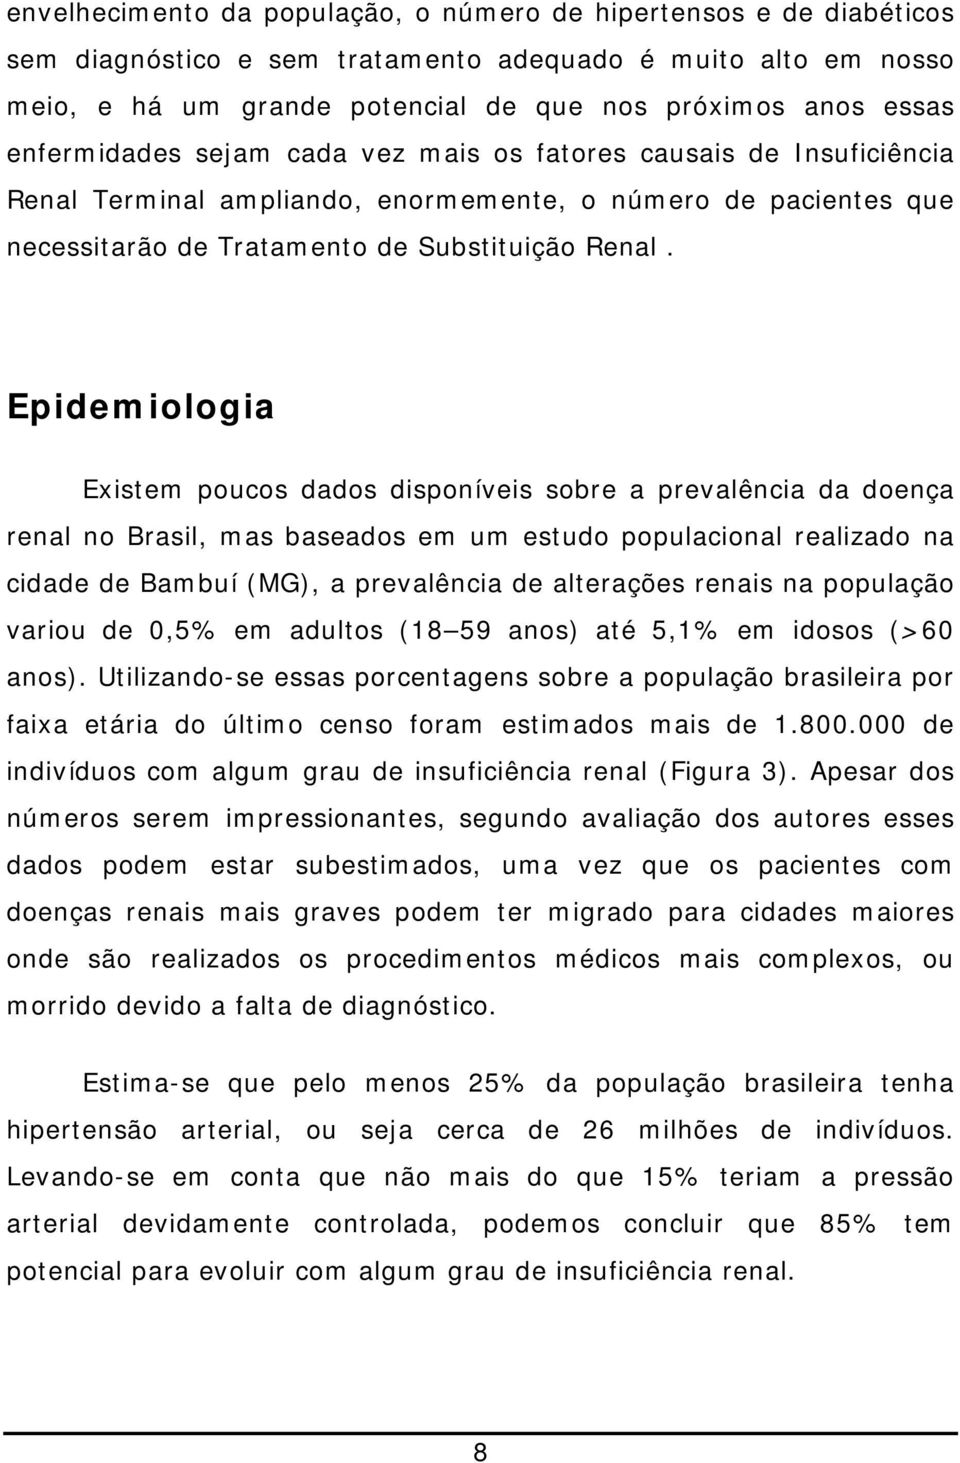 Epidemiologia Existem poucos dados disponíveis sobre a prevalência da doença renal no Brasil, mas baseados em um estudo populacional realizado na cidade de Bambuí (MG), a prevalência de alterações